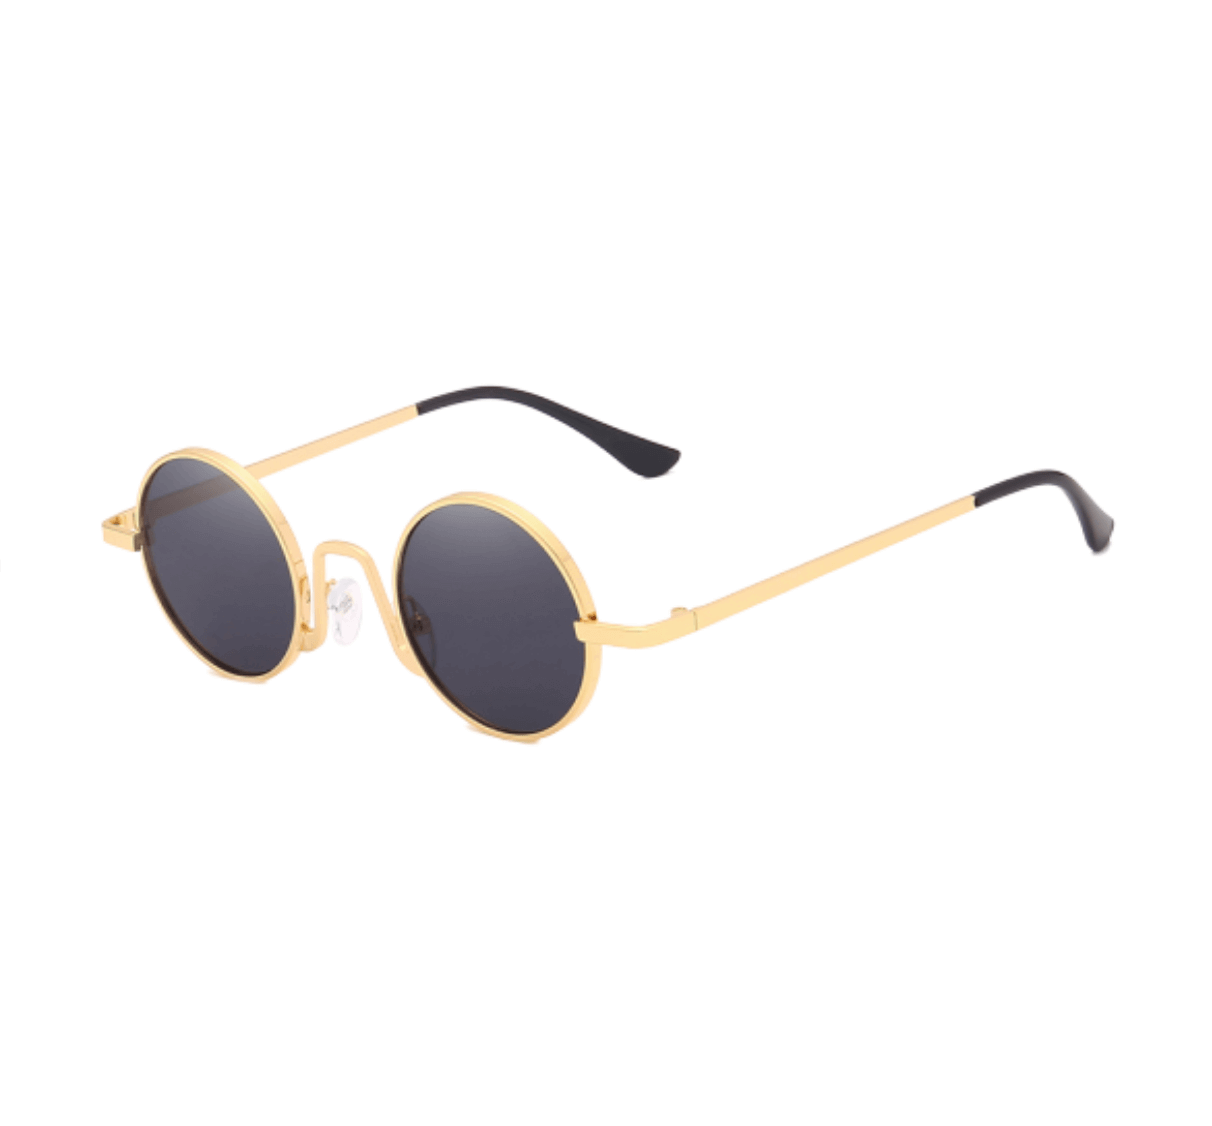 mens wholesale sunglasses, wholesale round sunglasses, China sunglasses supplier, sunglasses vendor wholesale